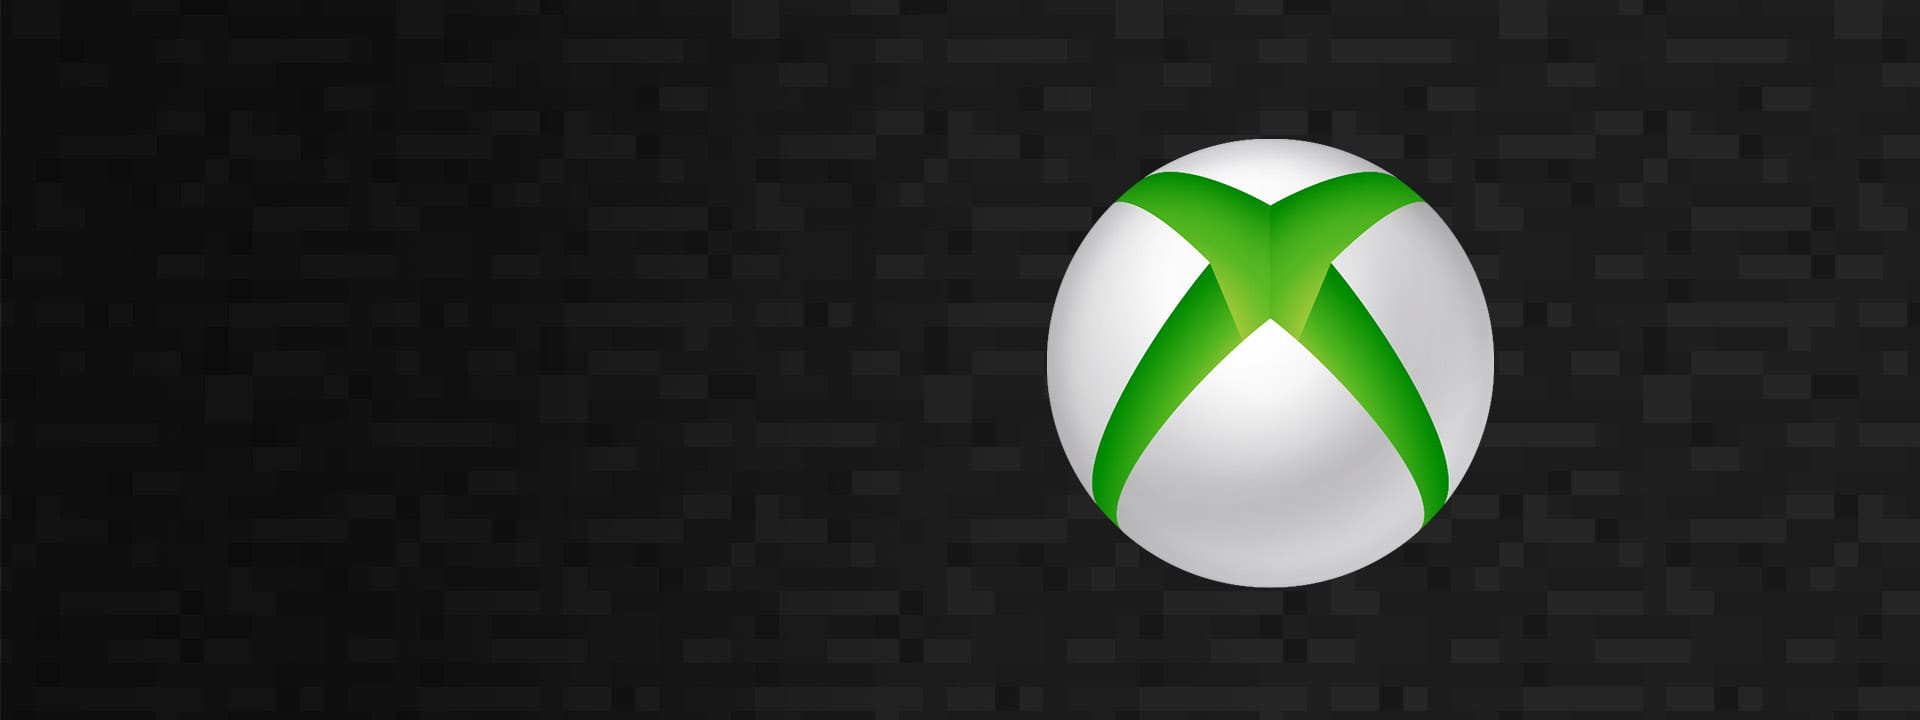 الألعاب الي هيتم إستعراضها في بث Xbox القادم